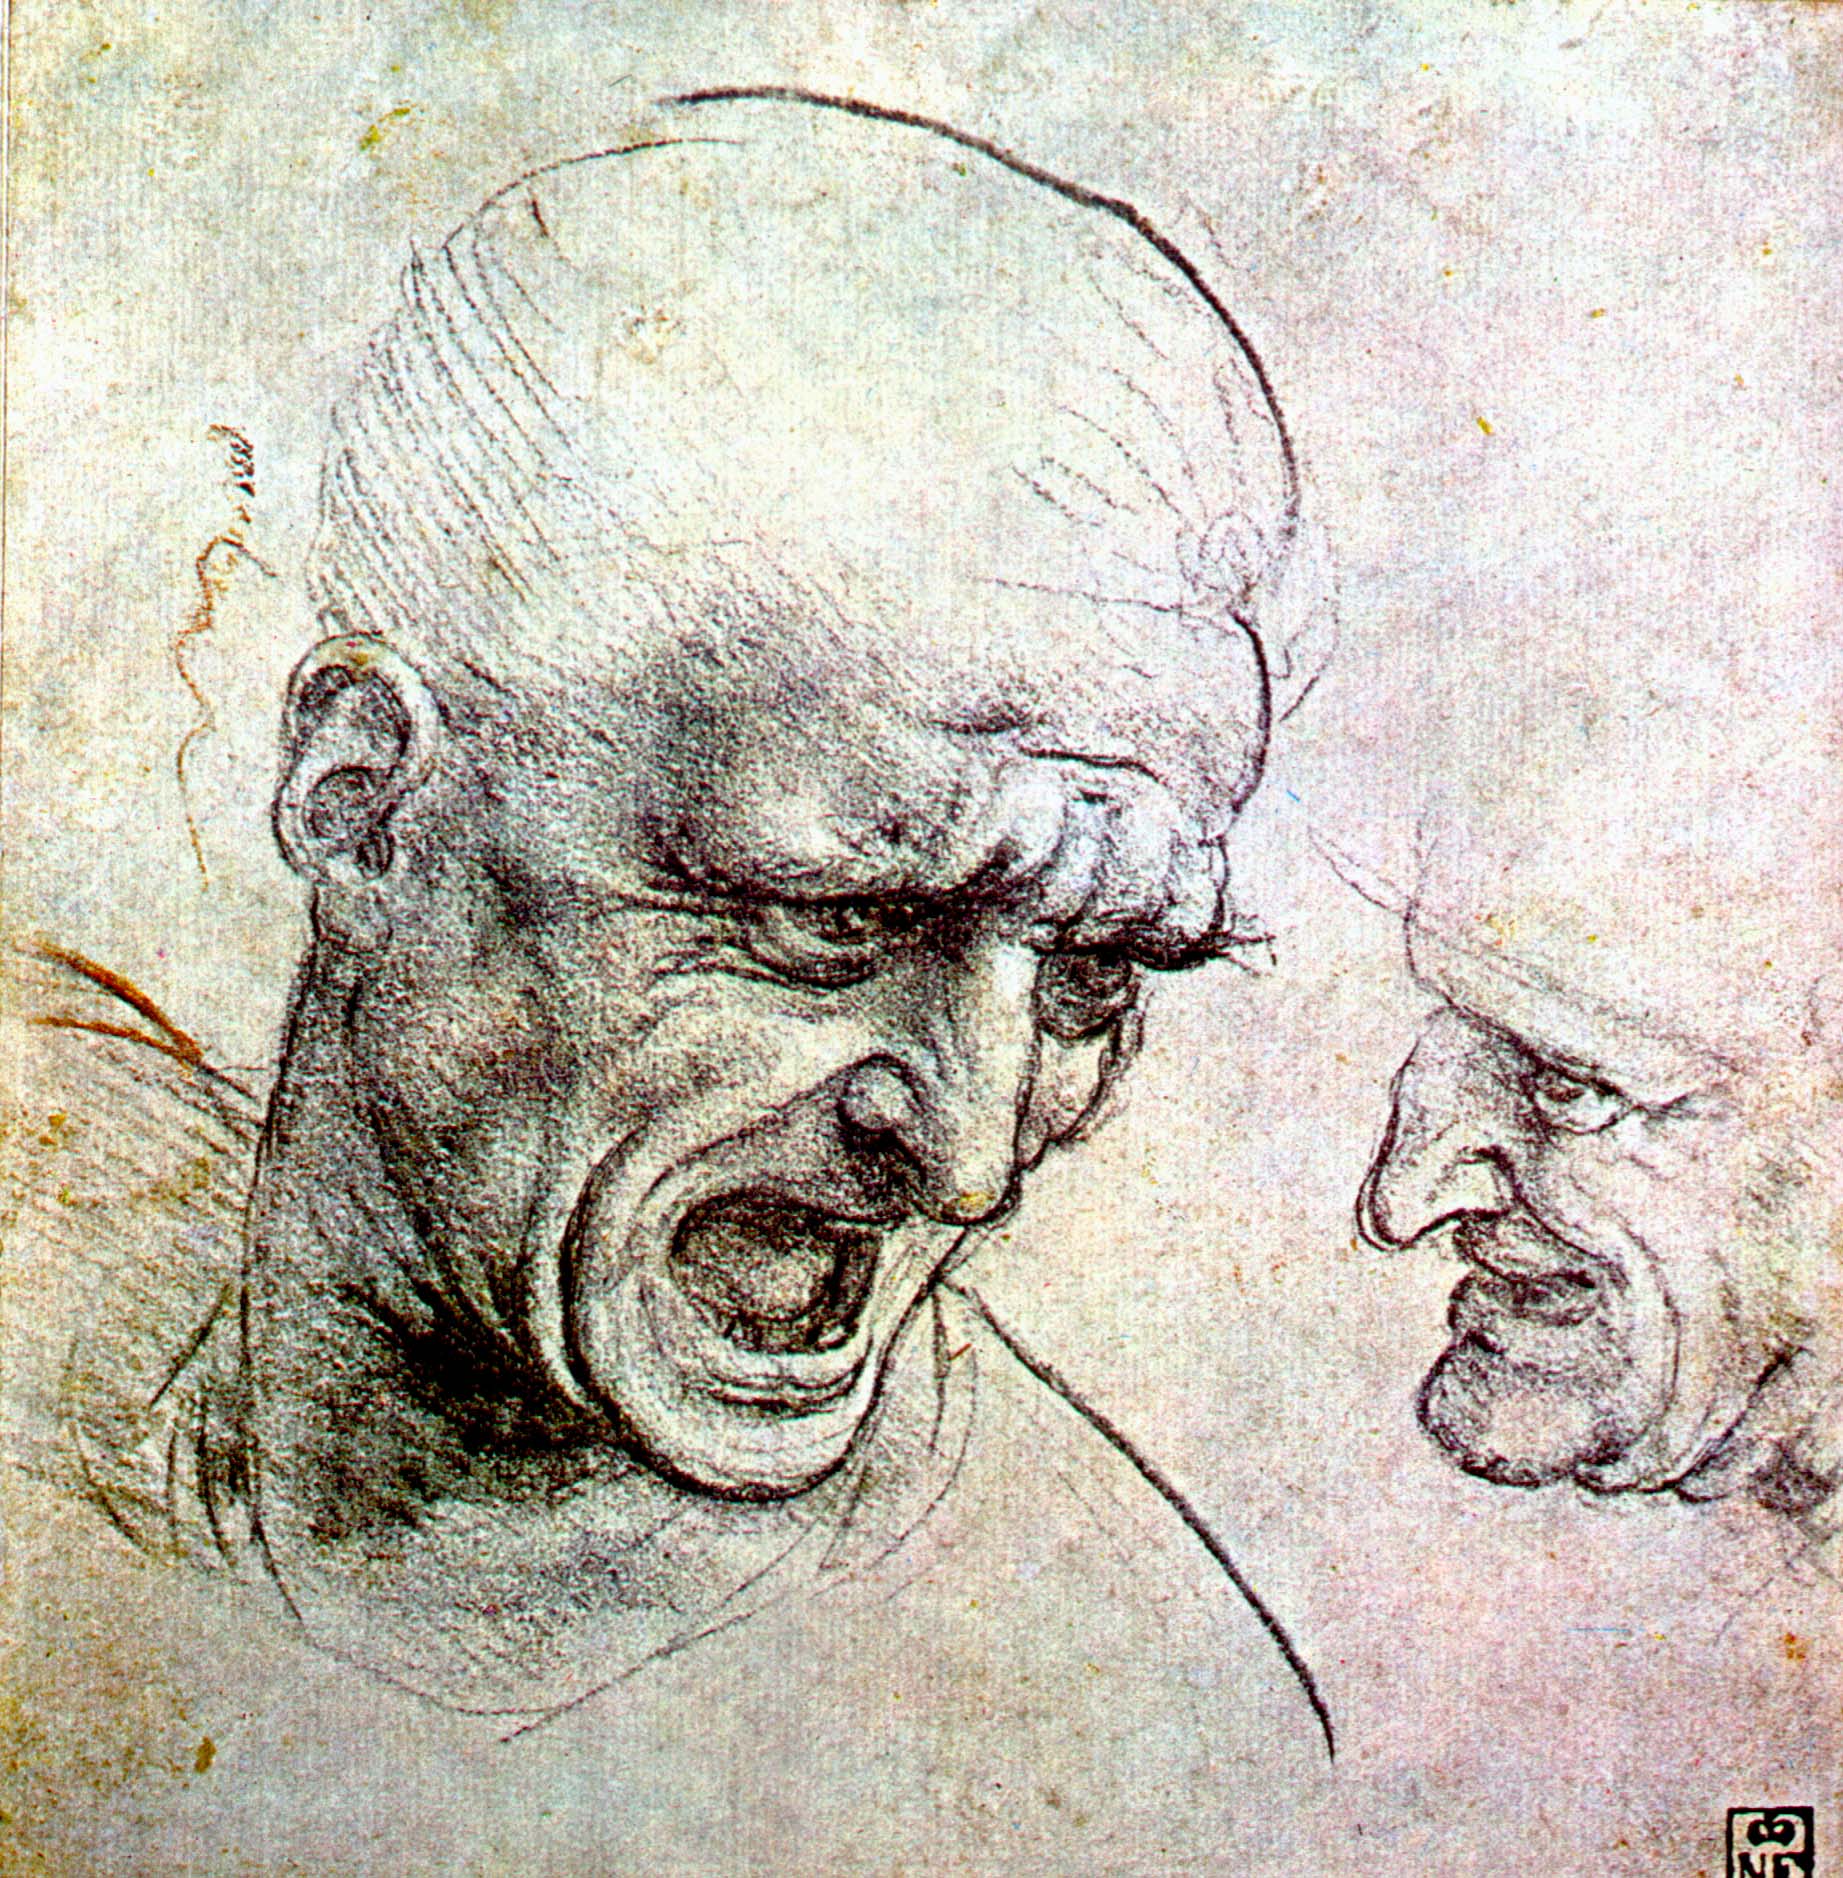 Леонардо да Винчи. "Голова кричащего человека в профиль".